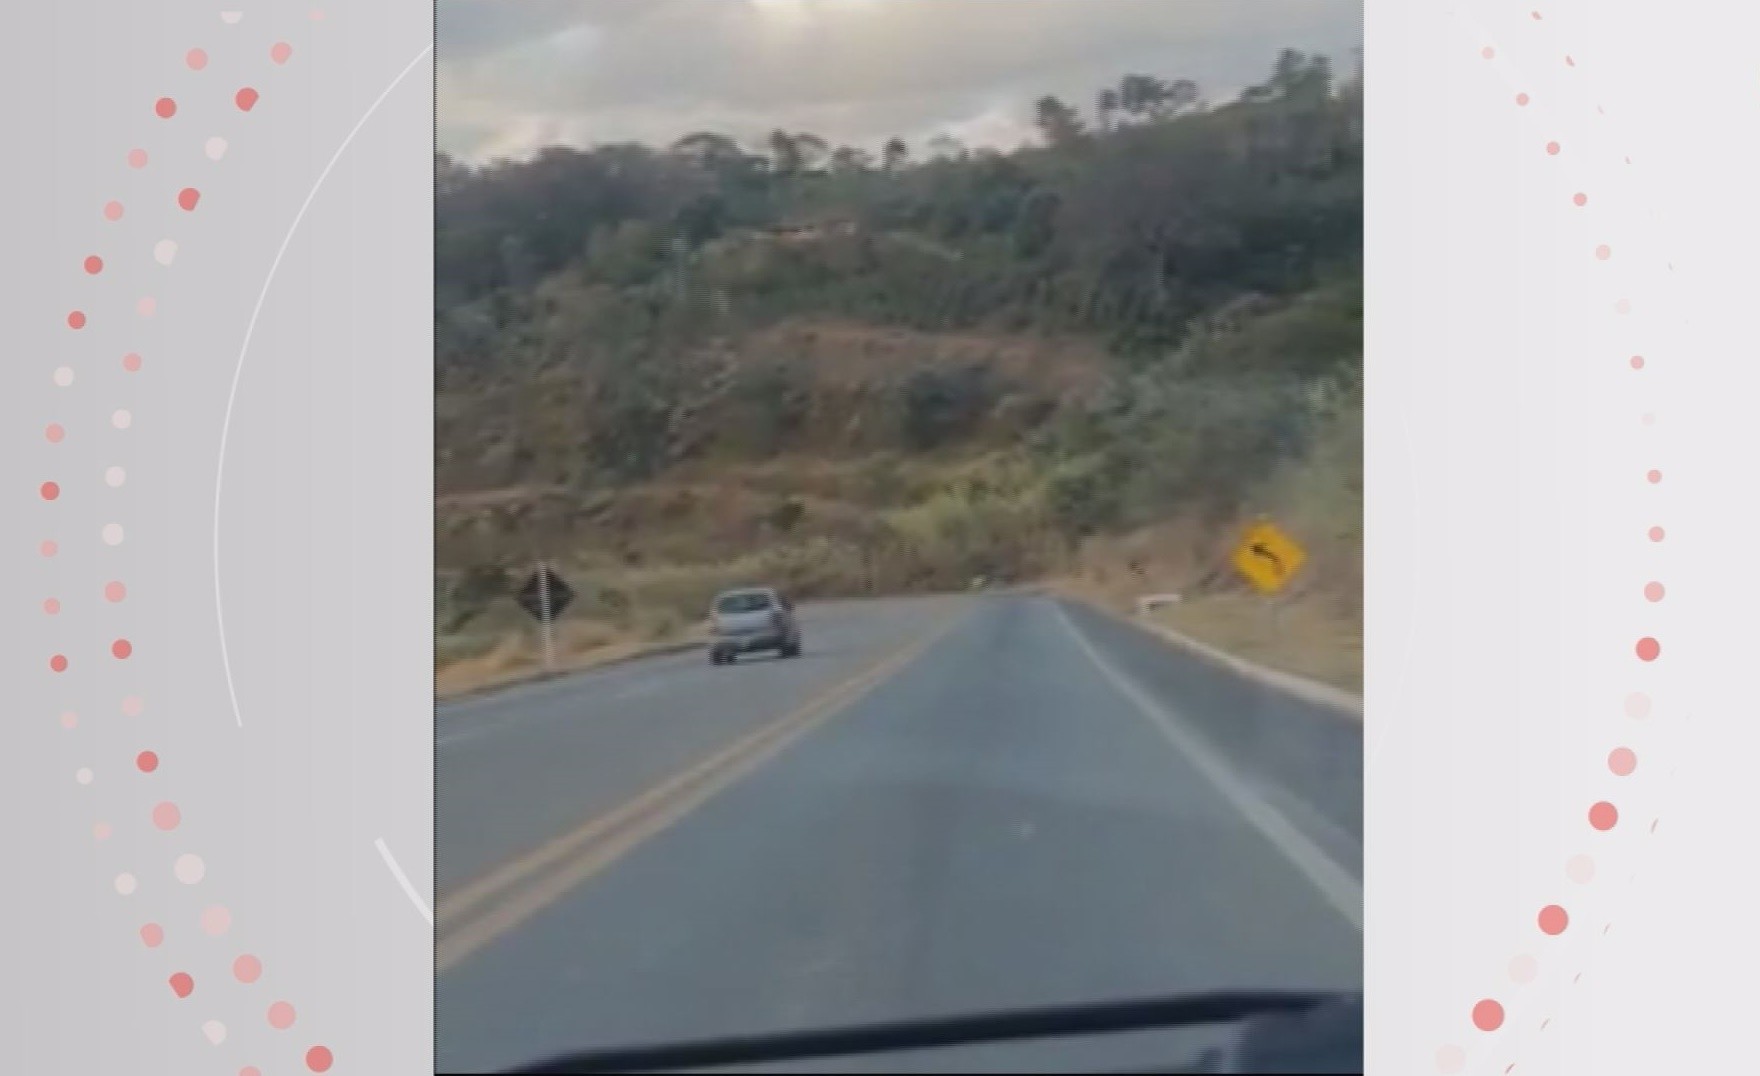 VÍDEO: Motorista é preso por dirigir embriagado na BR-146, em Poços de Caldas, MG